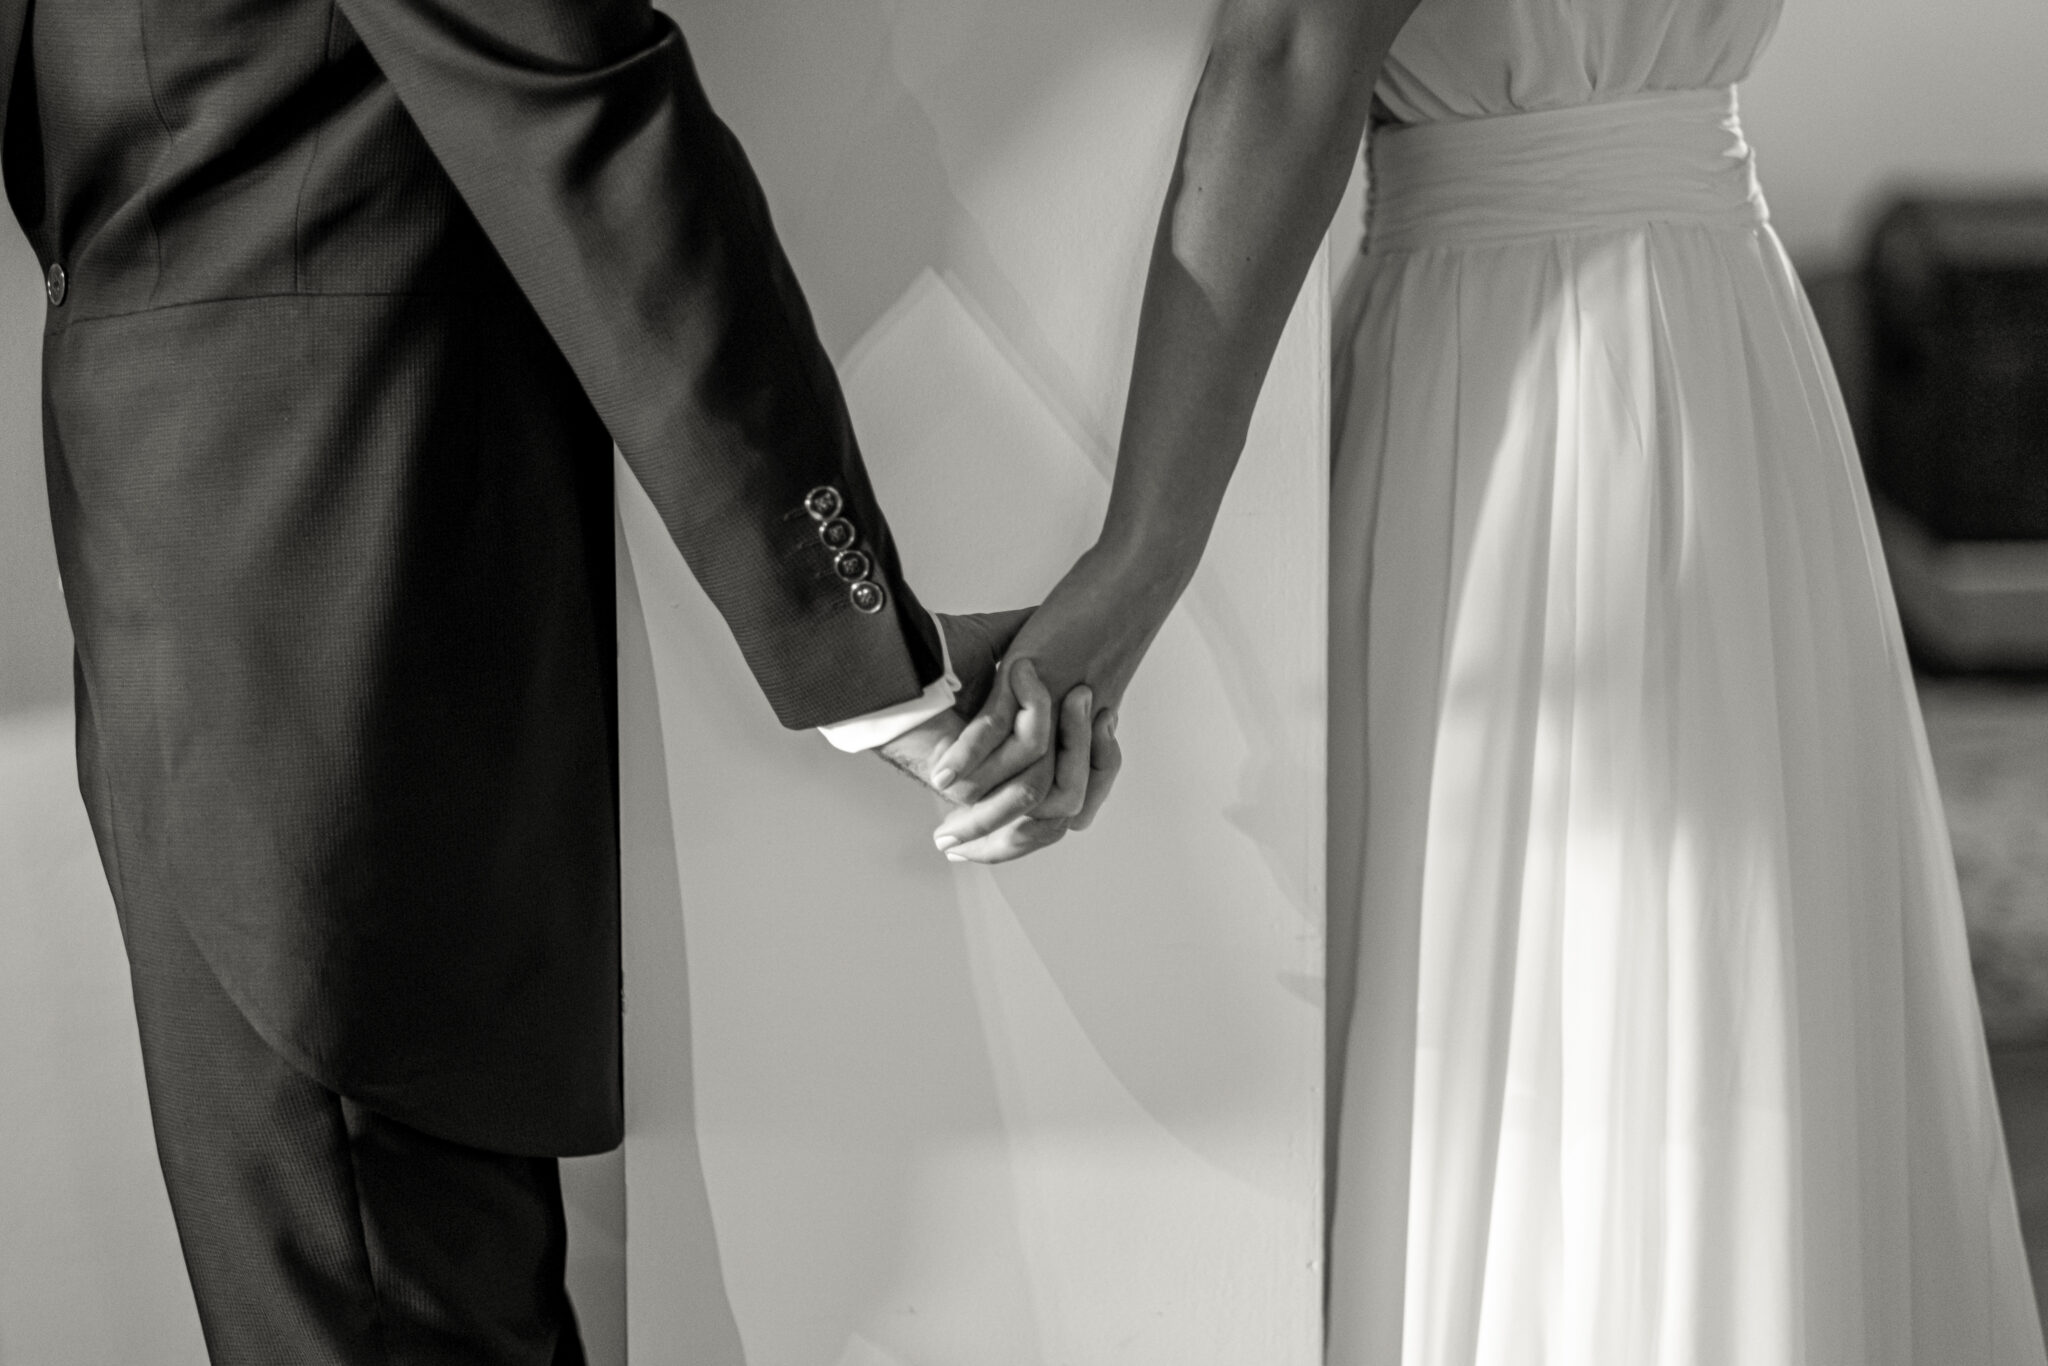 Foto encuentro antes de ceremonia novio y novia blanco y negro detalle manos